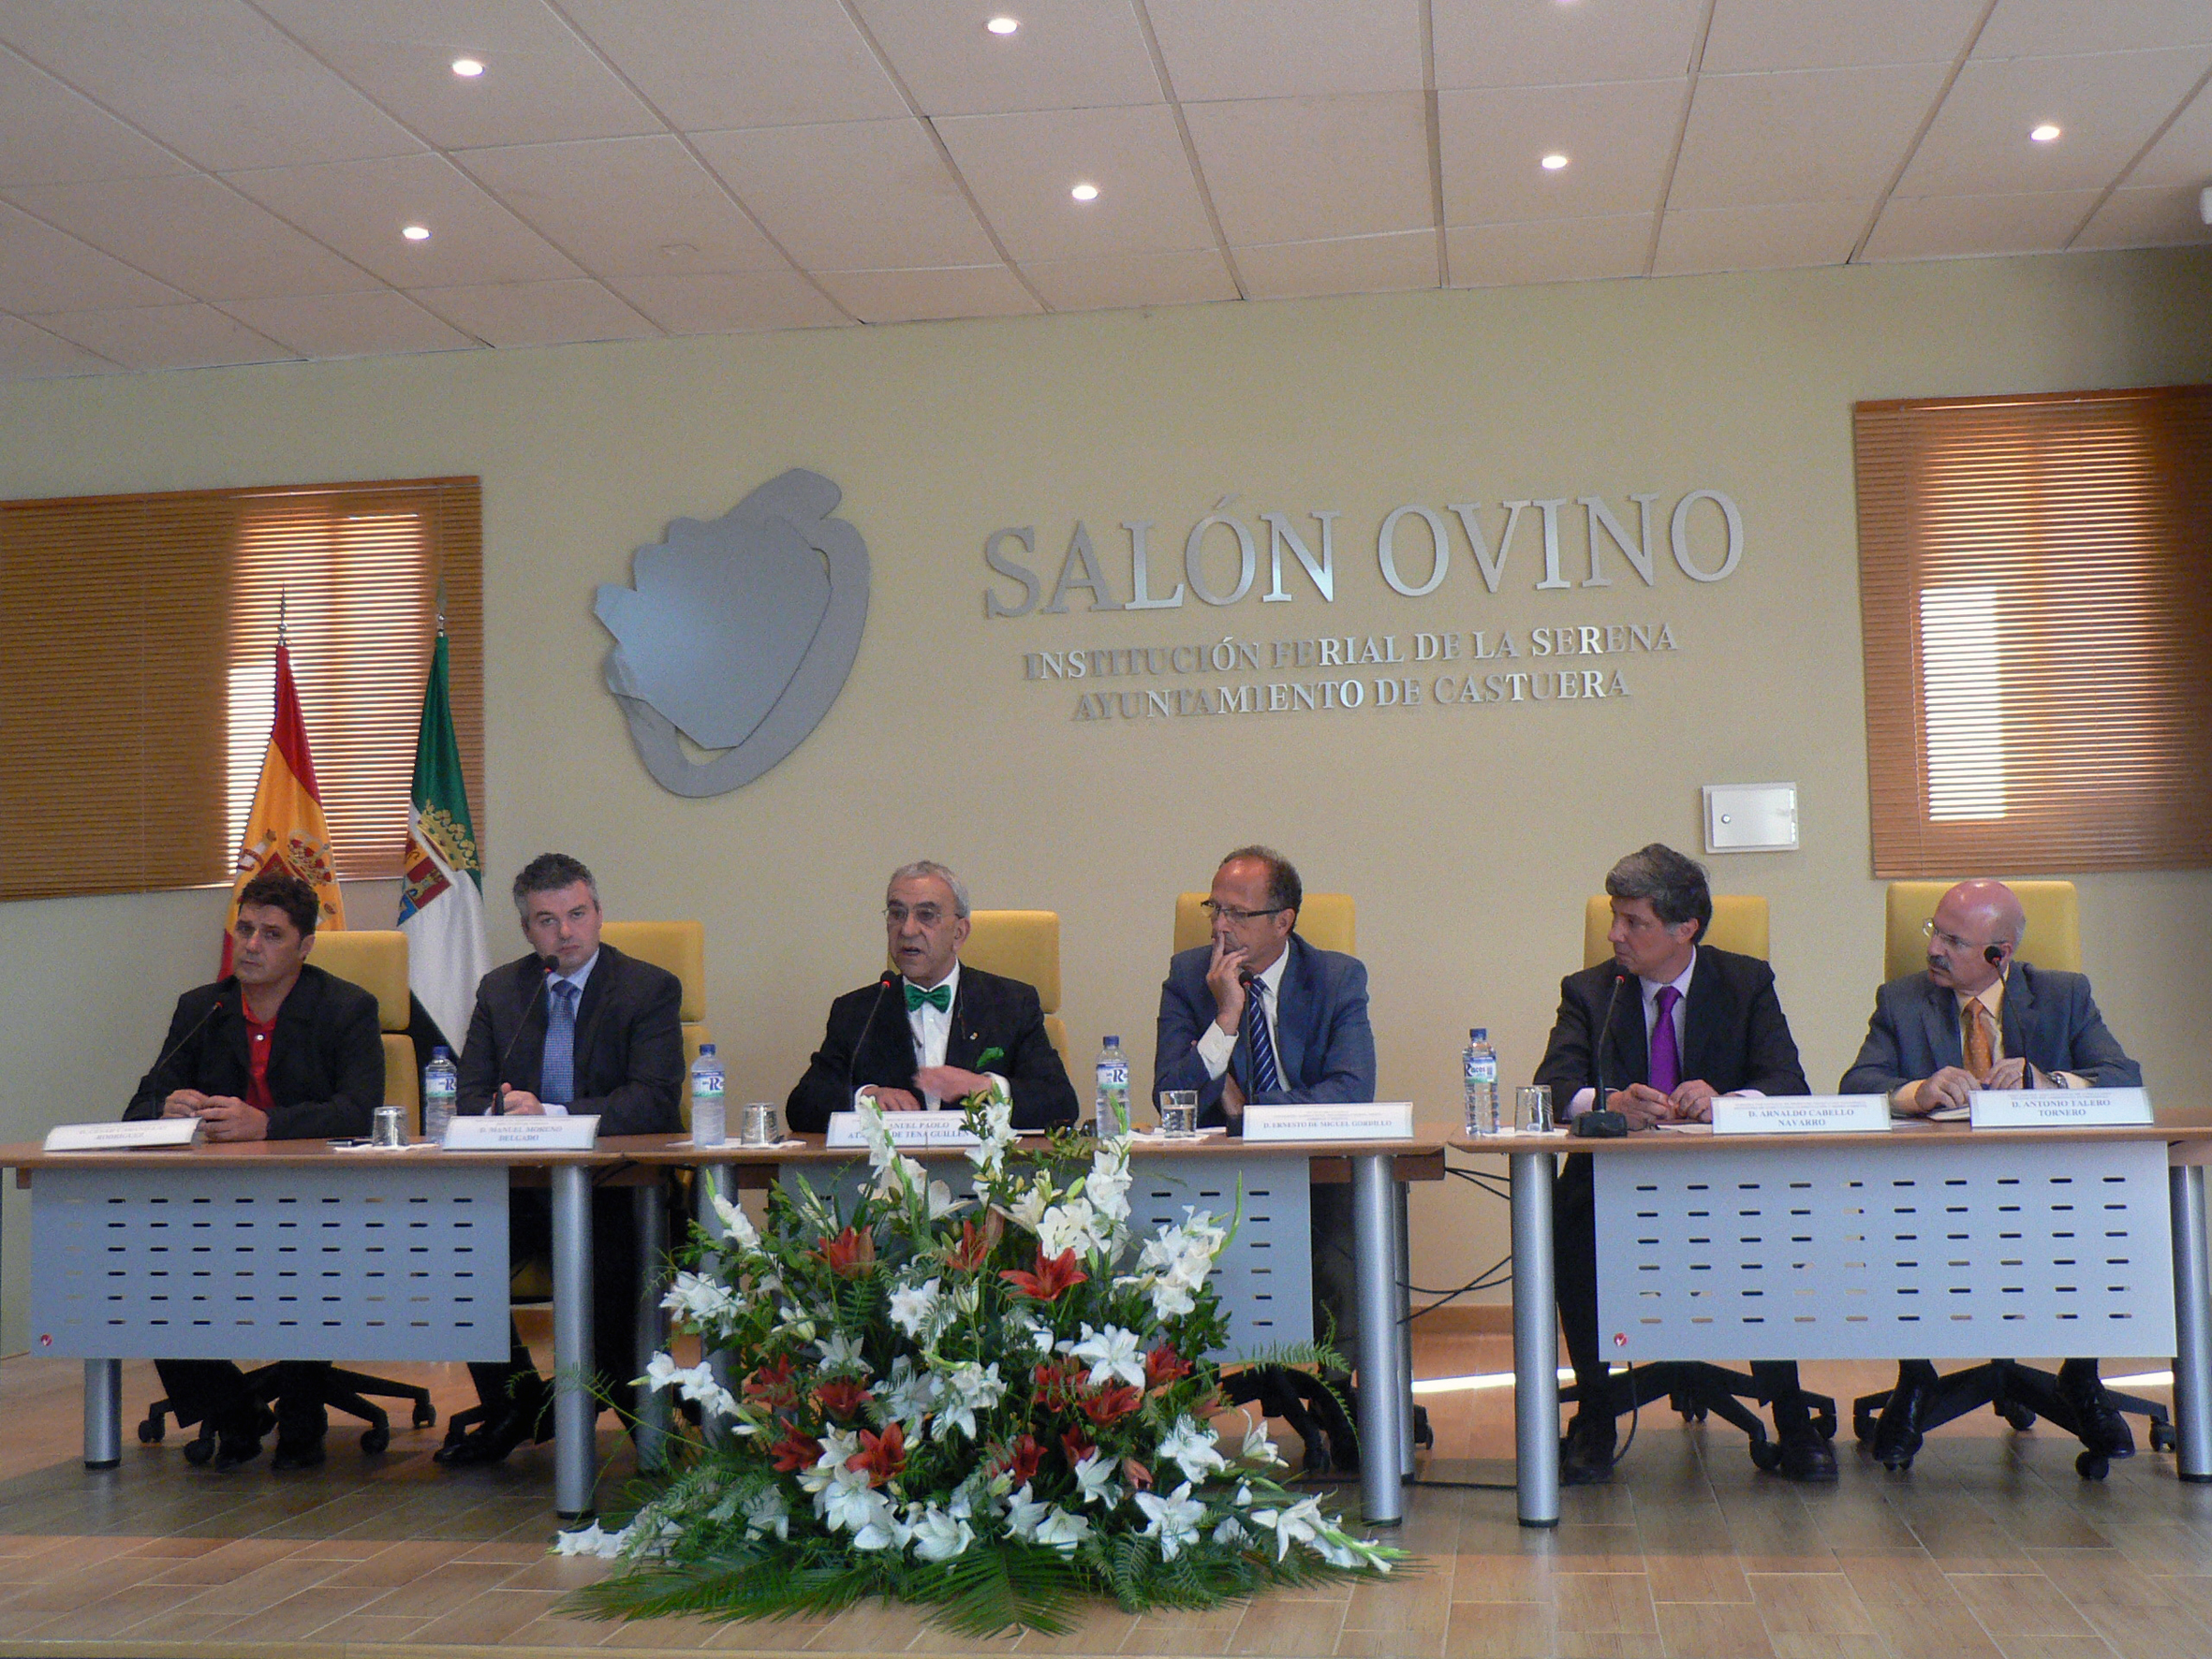 Inaugurada la XXVII edición del Salón Ovino de La Serena